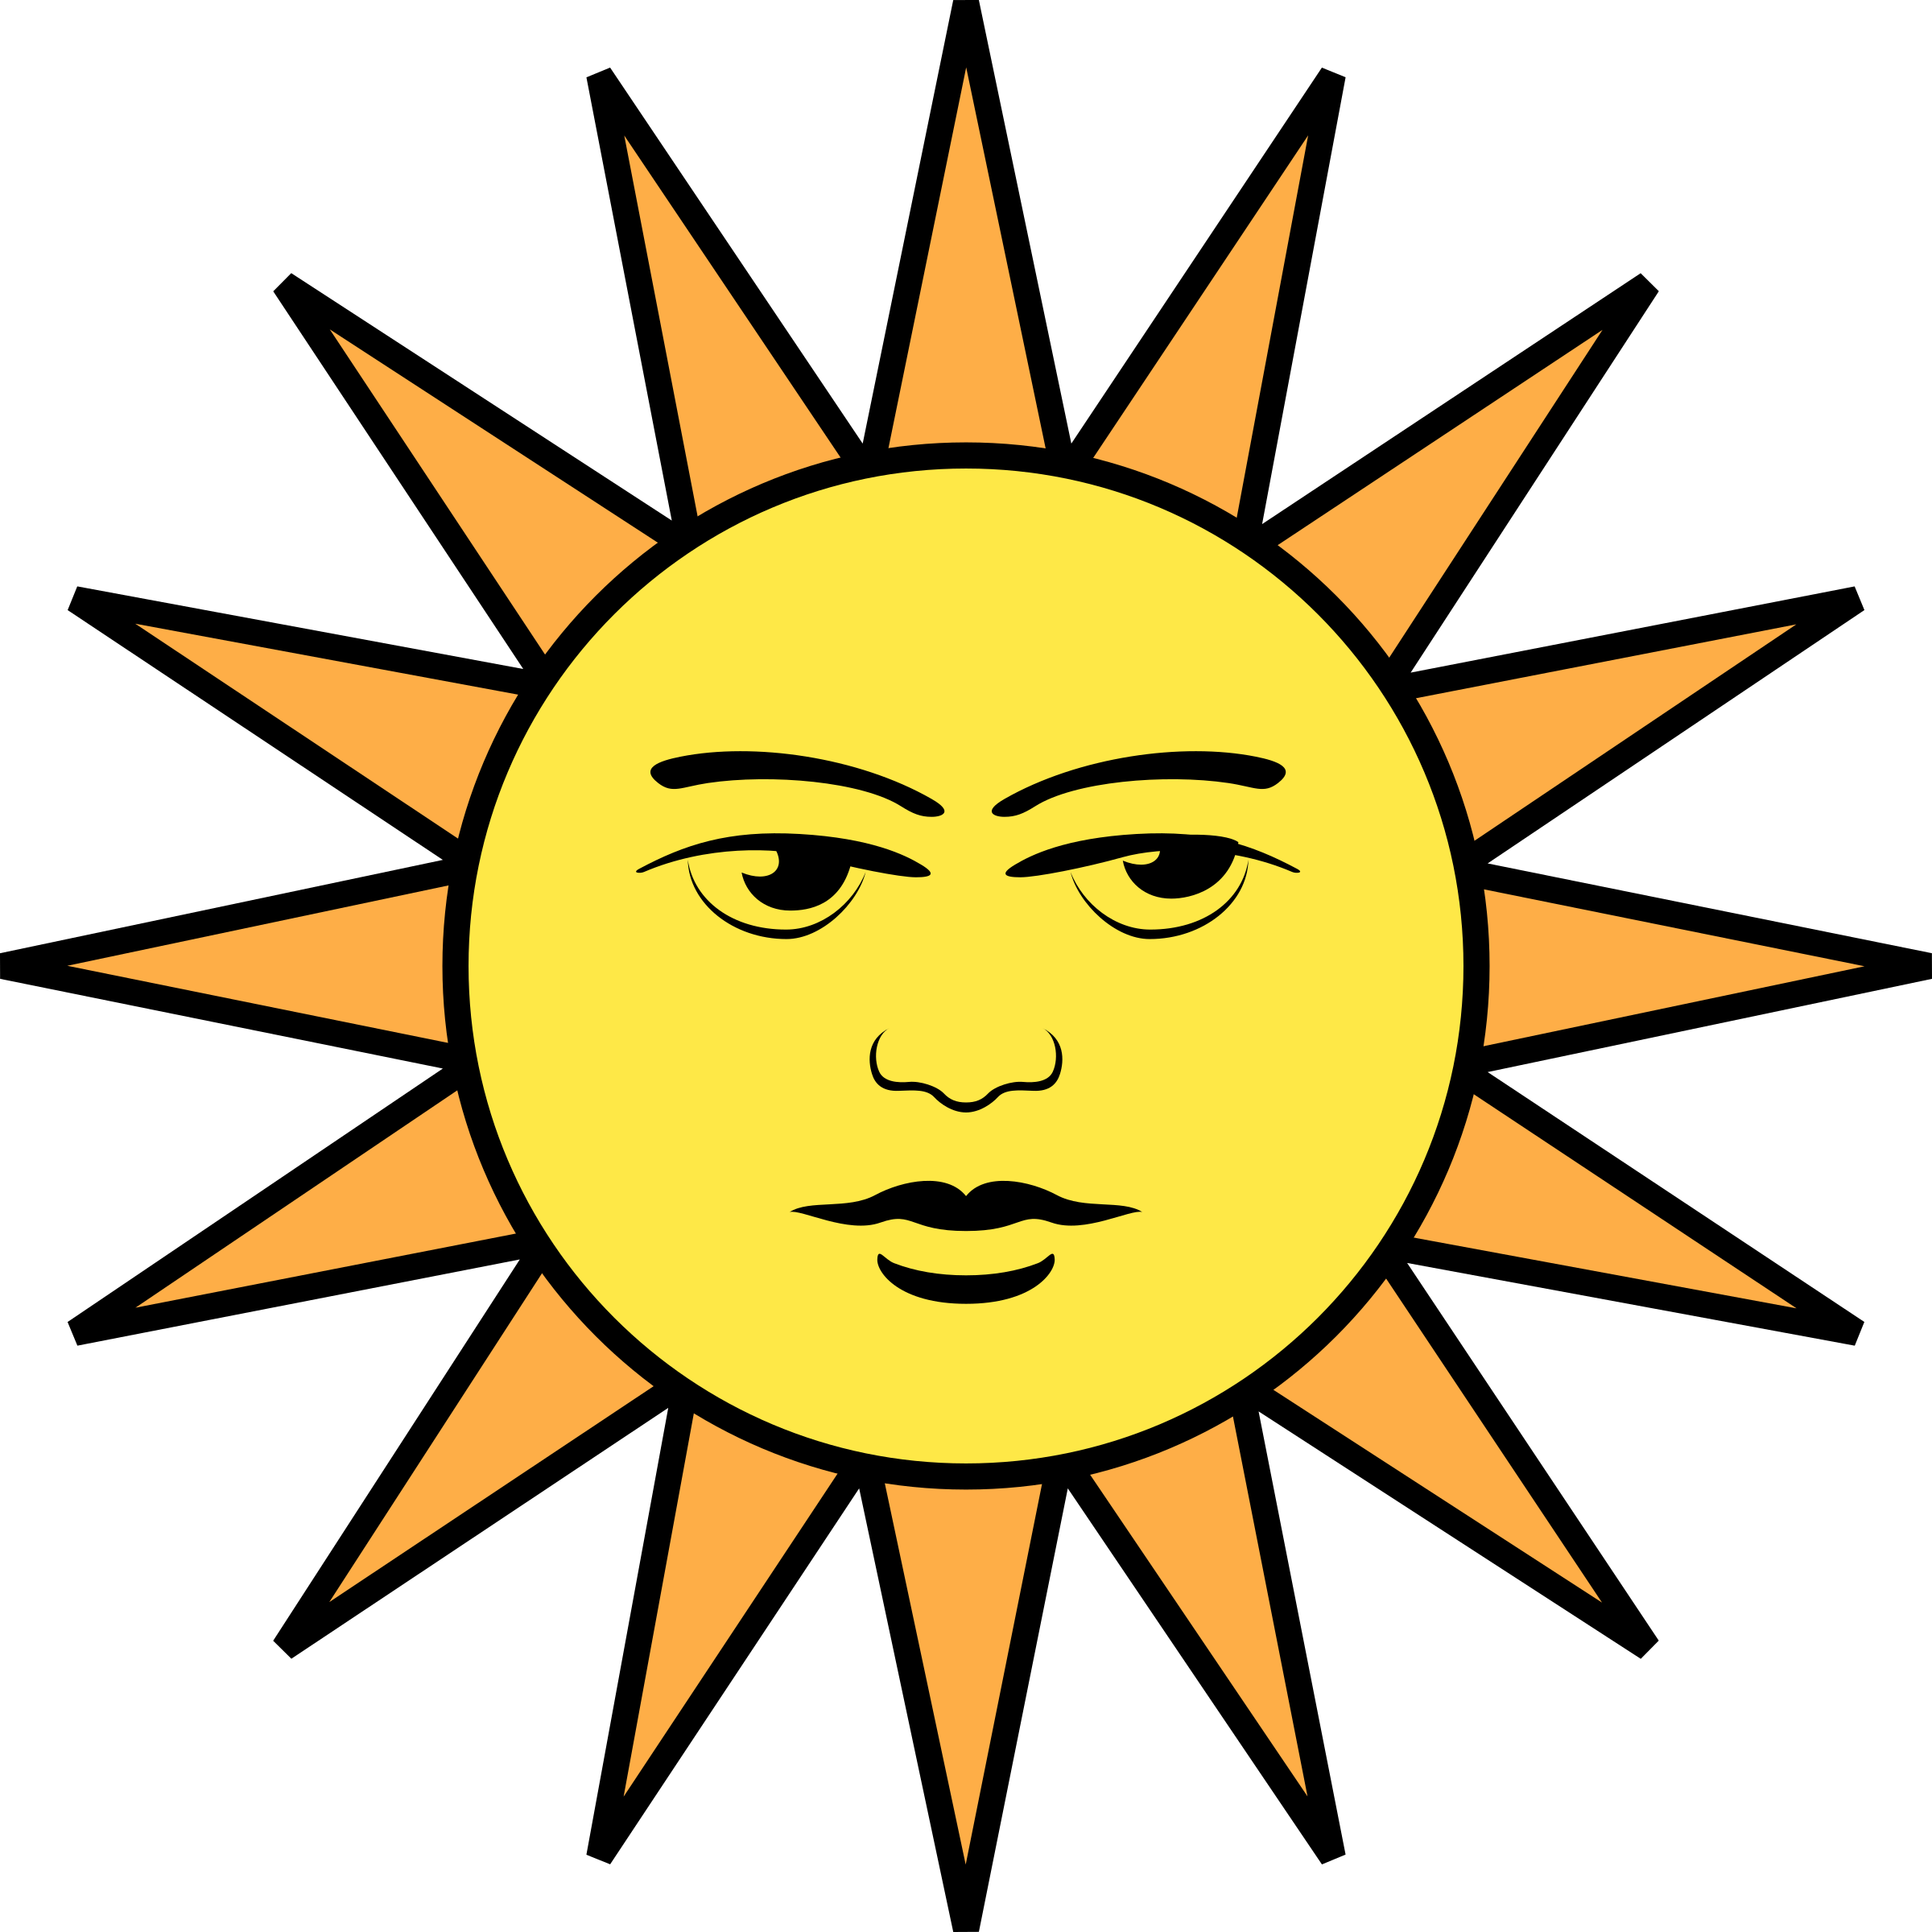 Солнце изображение рисунок. Изображение солнца. Лицом к солнцу. Солнце иллюстрация. Солнышко рисунок.